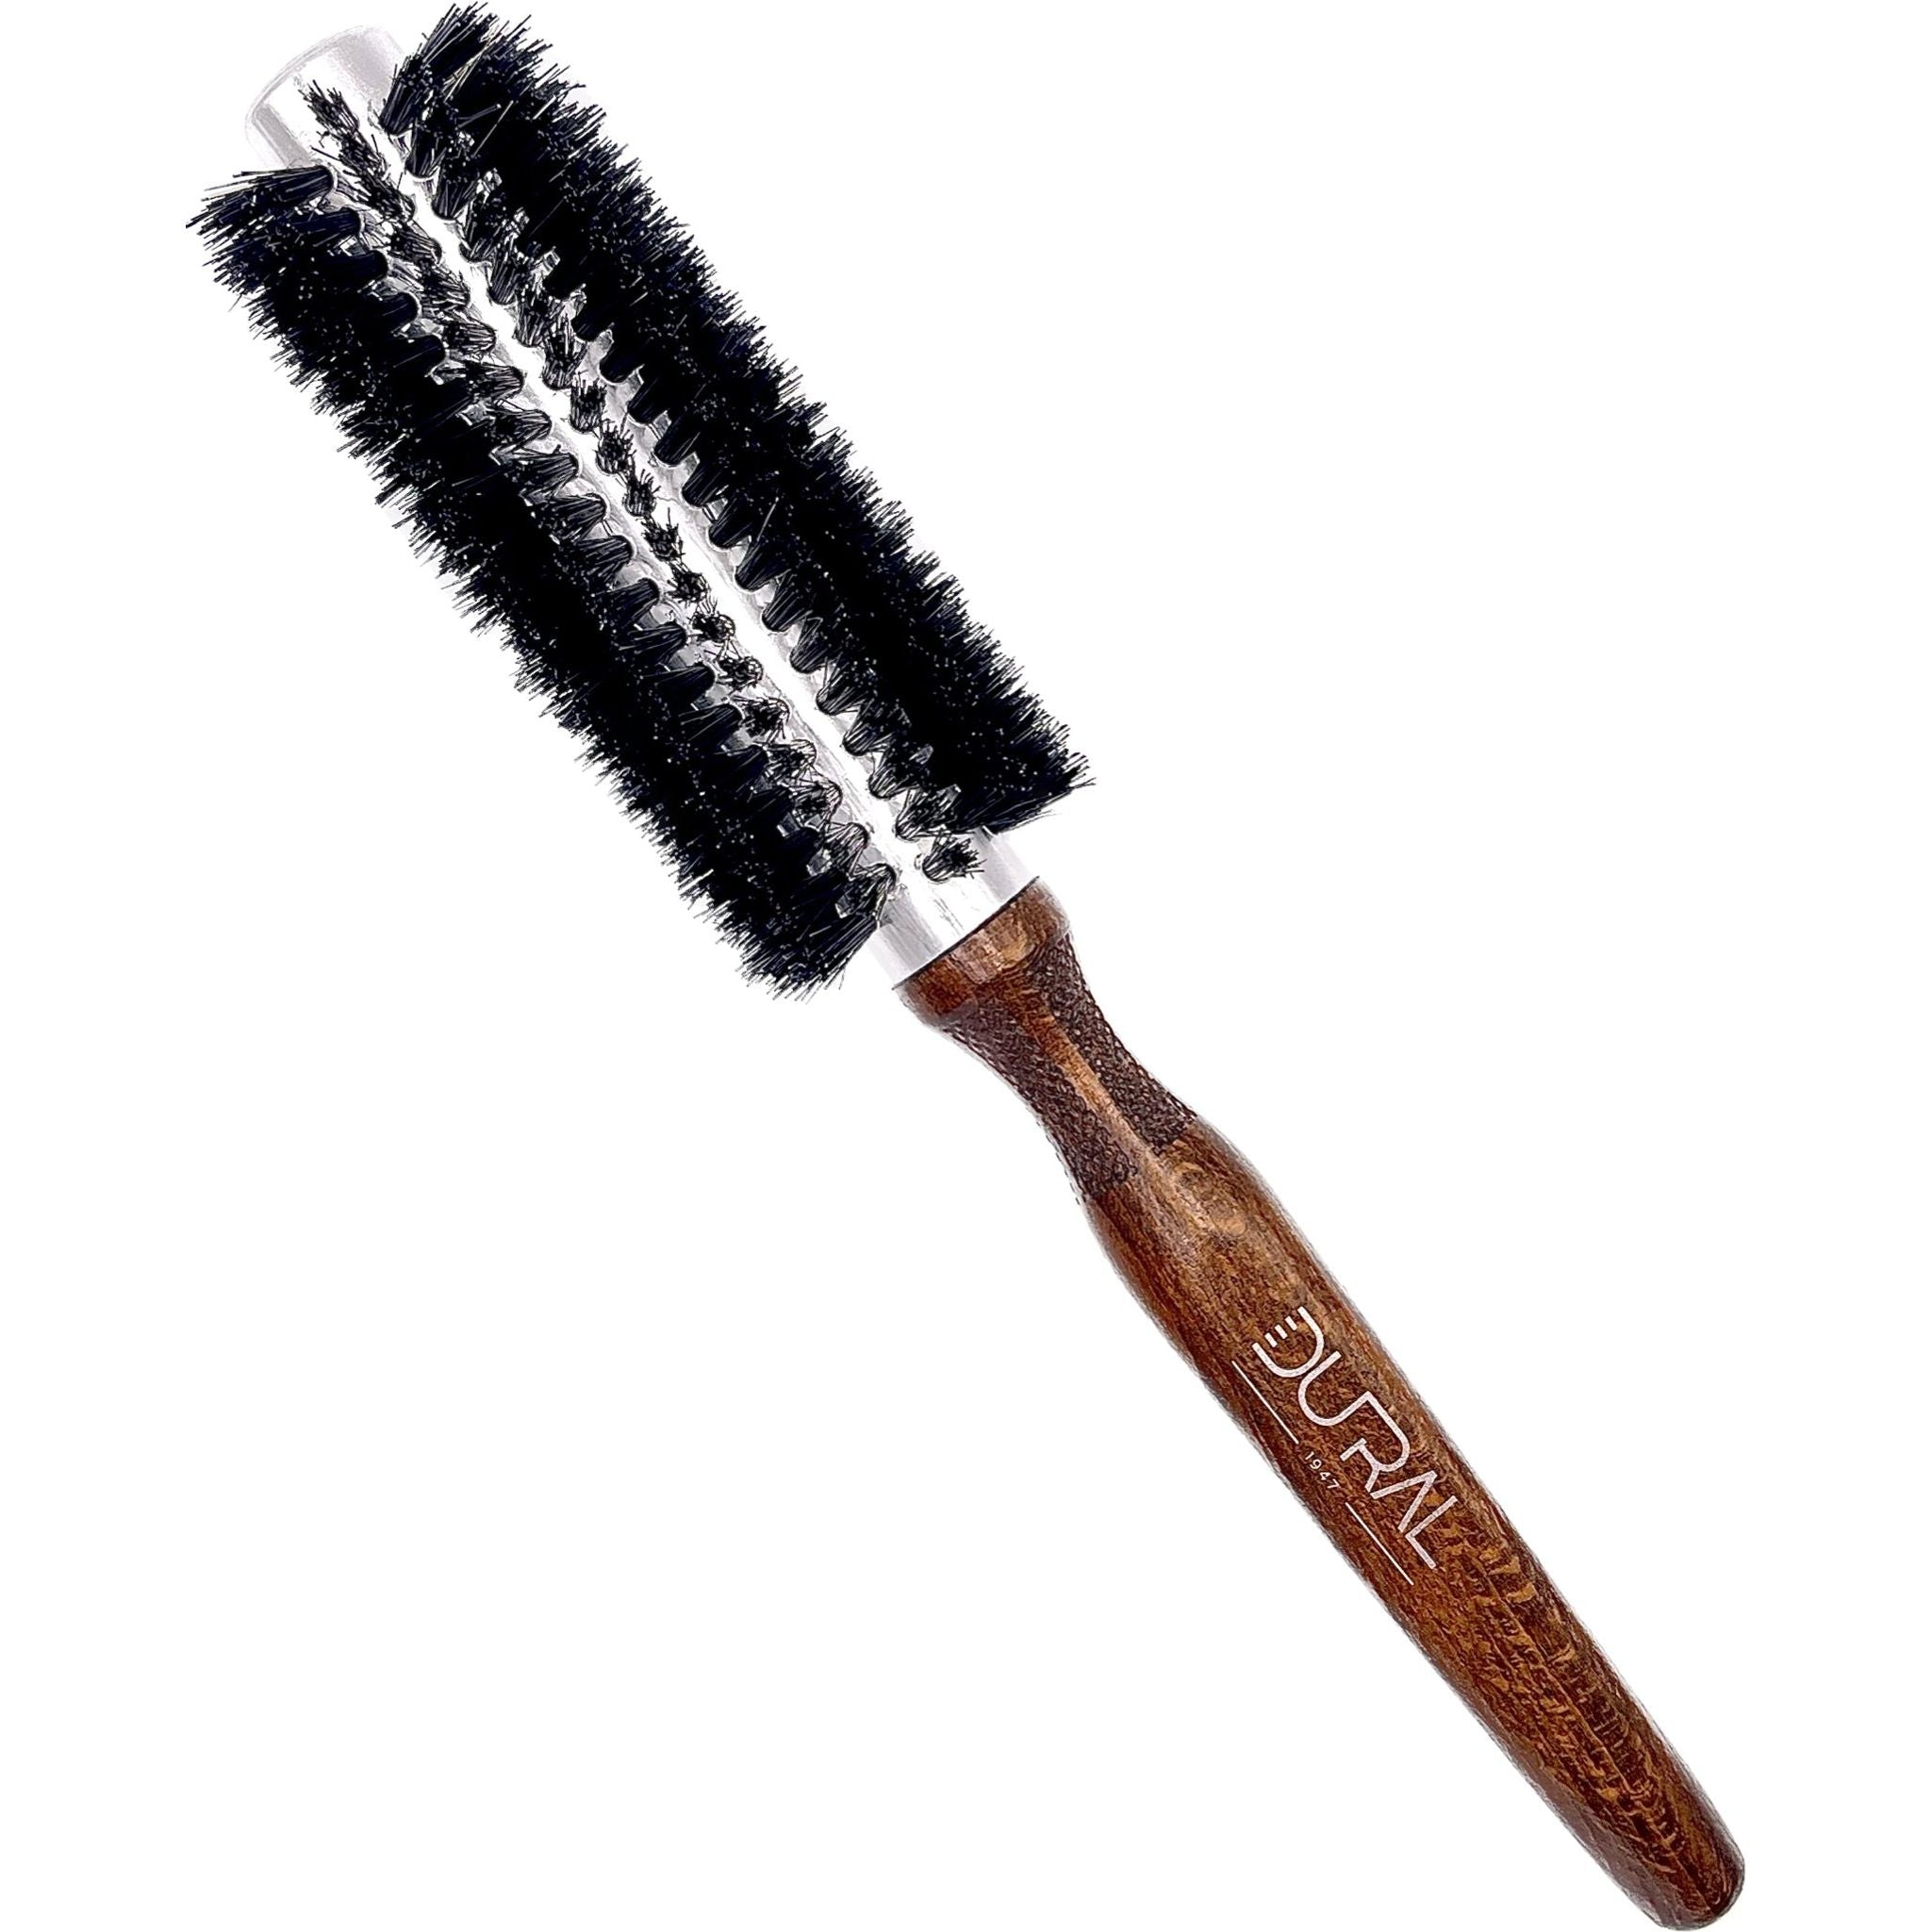 Dural Hair Brush 12 Rows Wood/Steel Pure Wild Boar Bristles